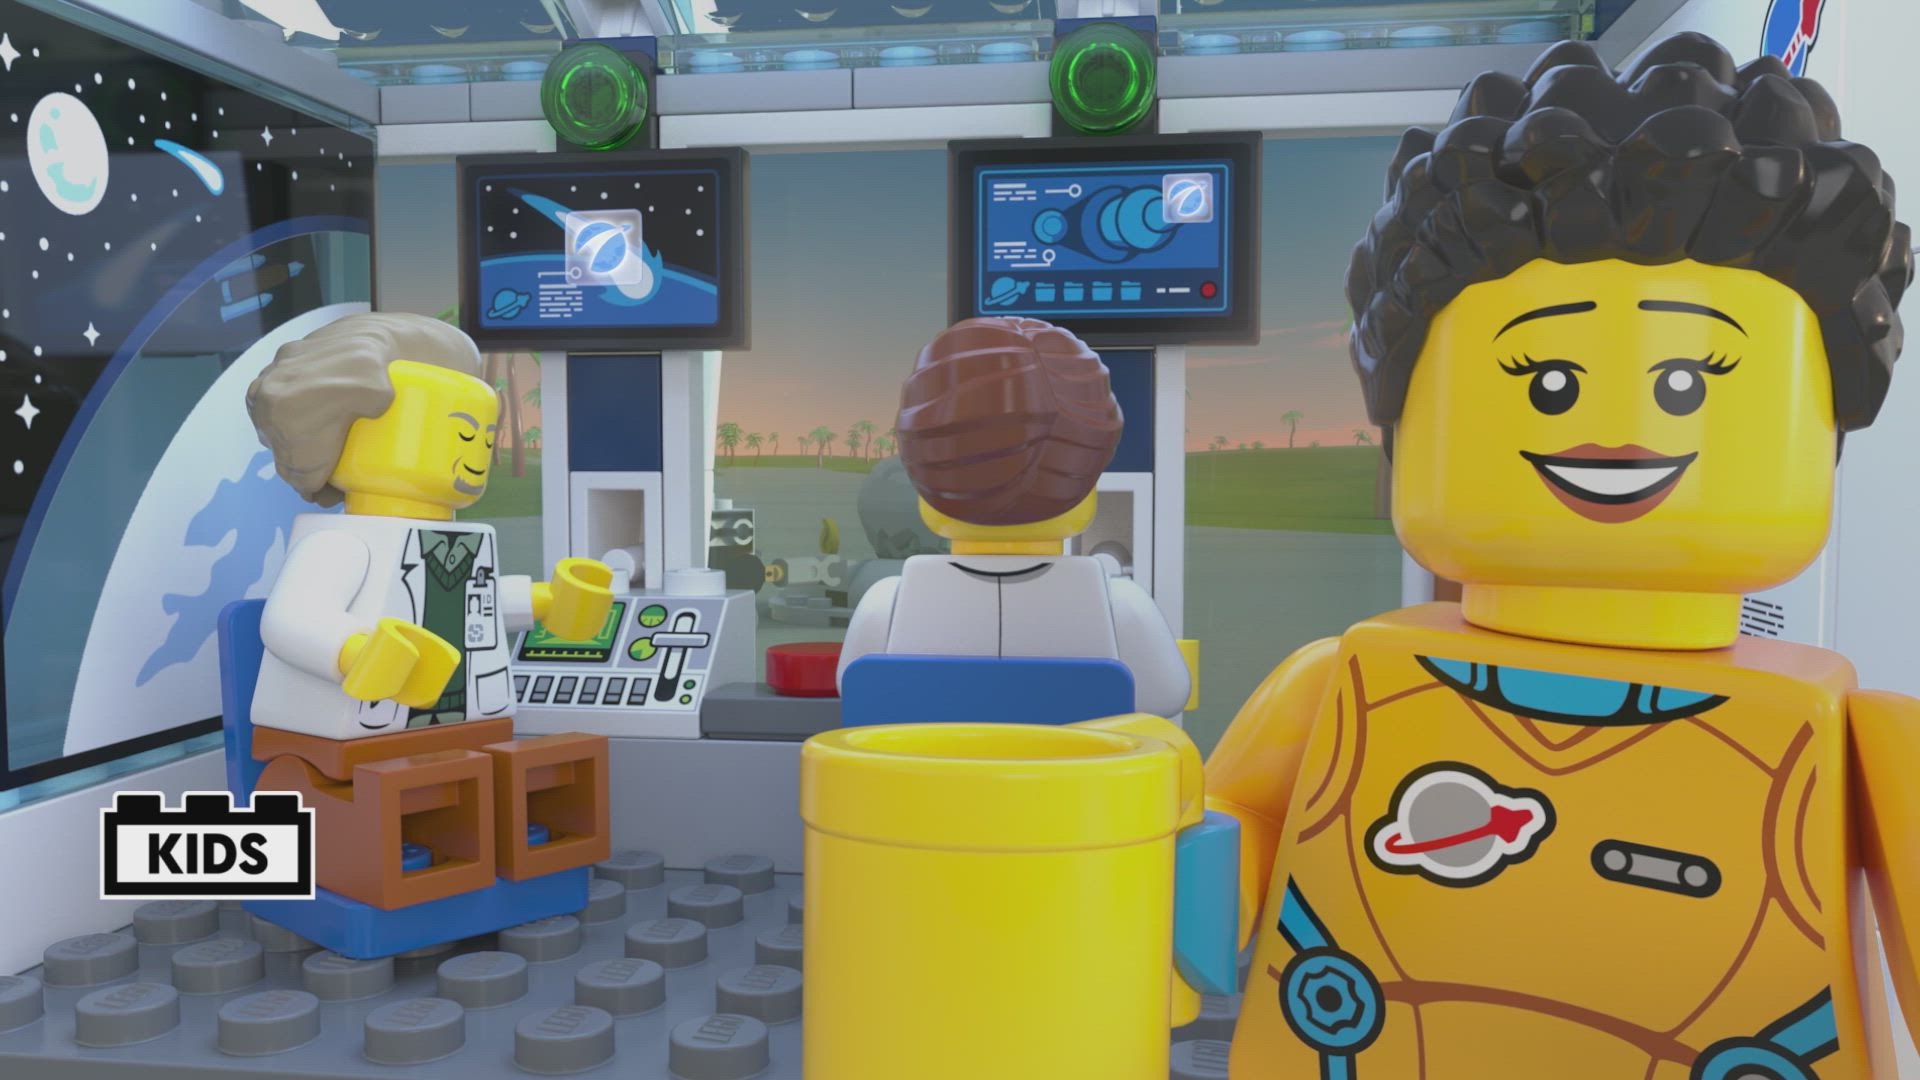 Kollisionskursus propel blive irriteret Hvem affyrede laseren? - LEGO® City videoer - LEGO.com for børn